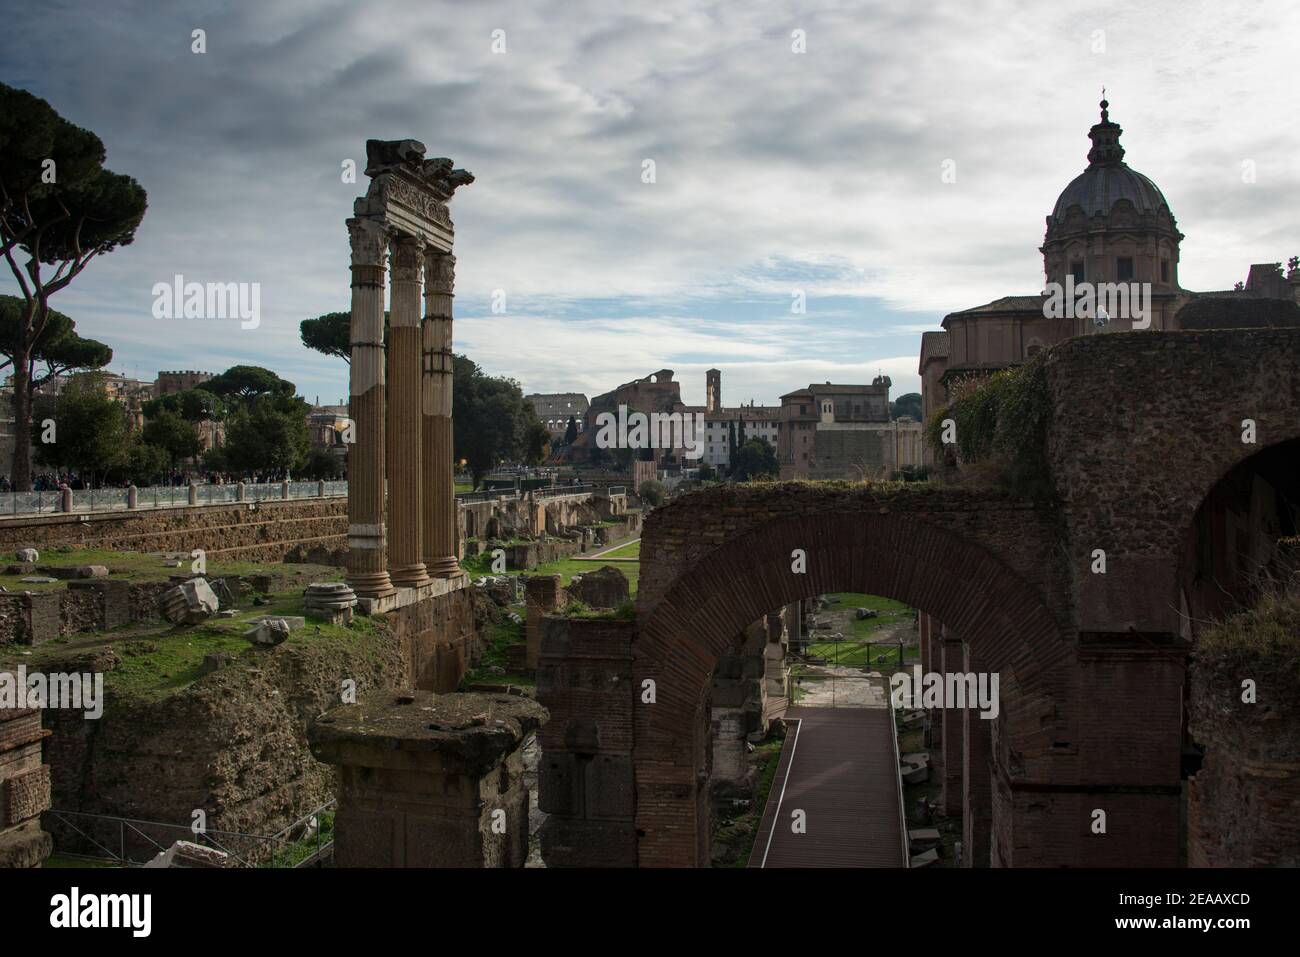 Sito archeologico romano Foro Romano a Roma Foto Stock